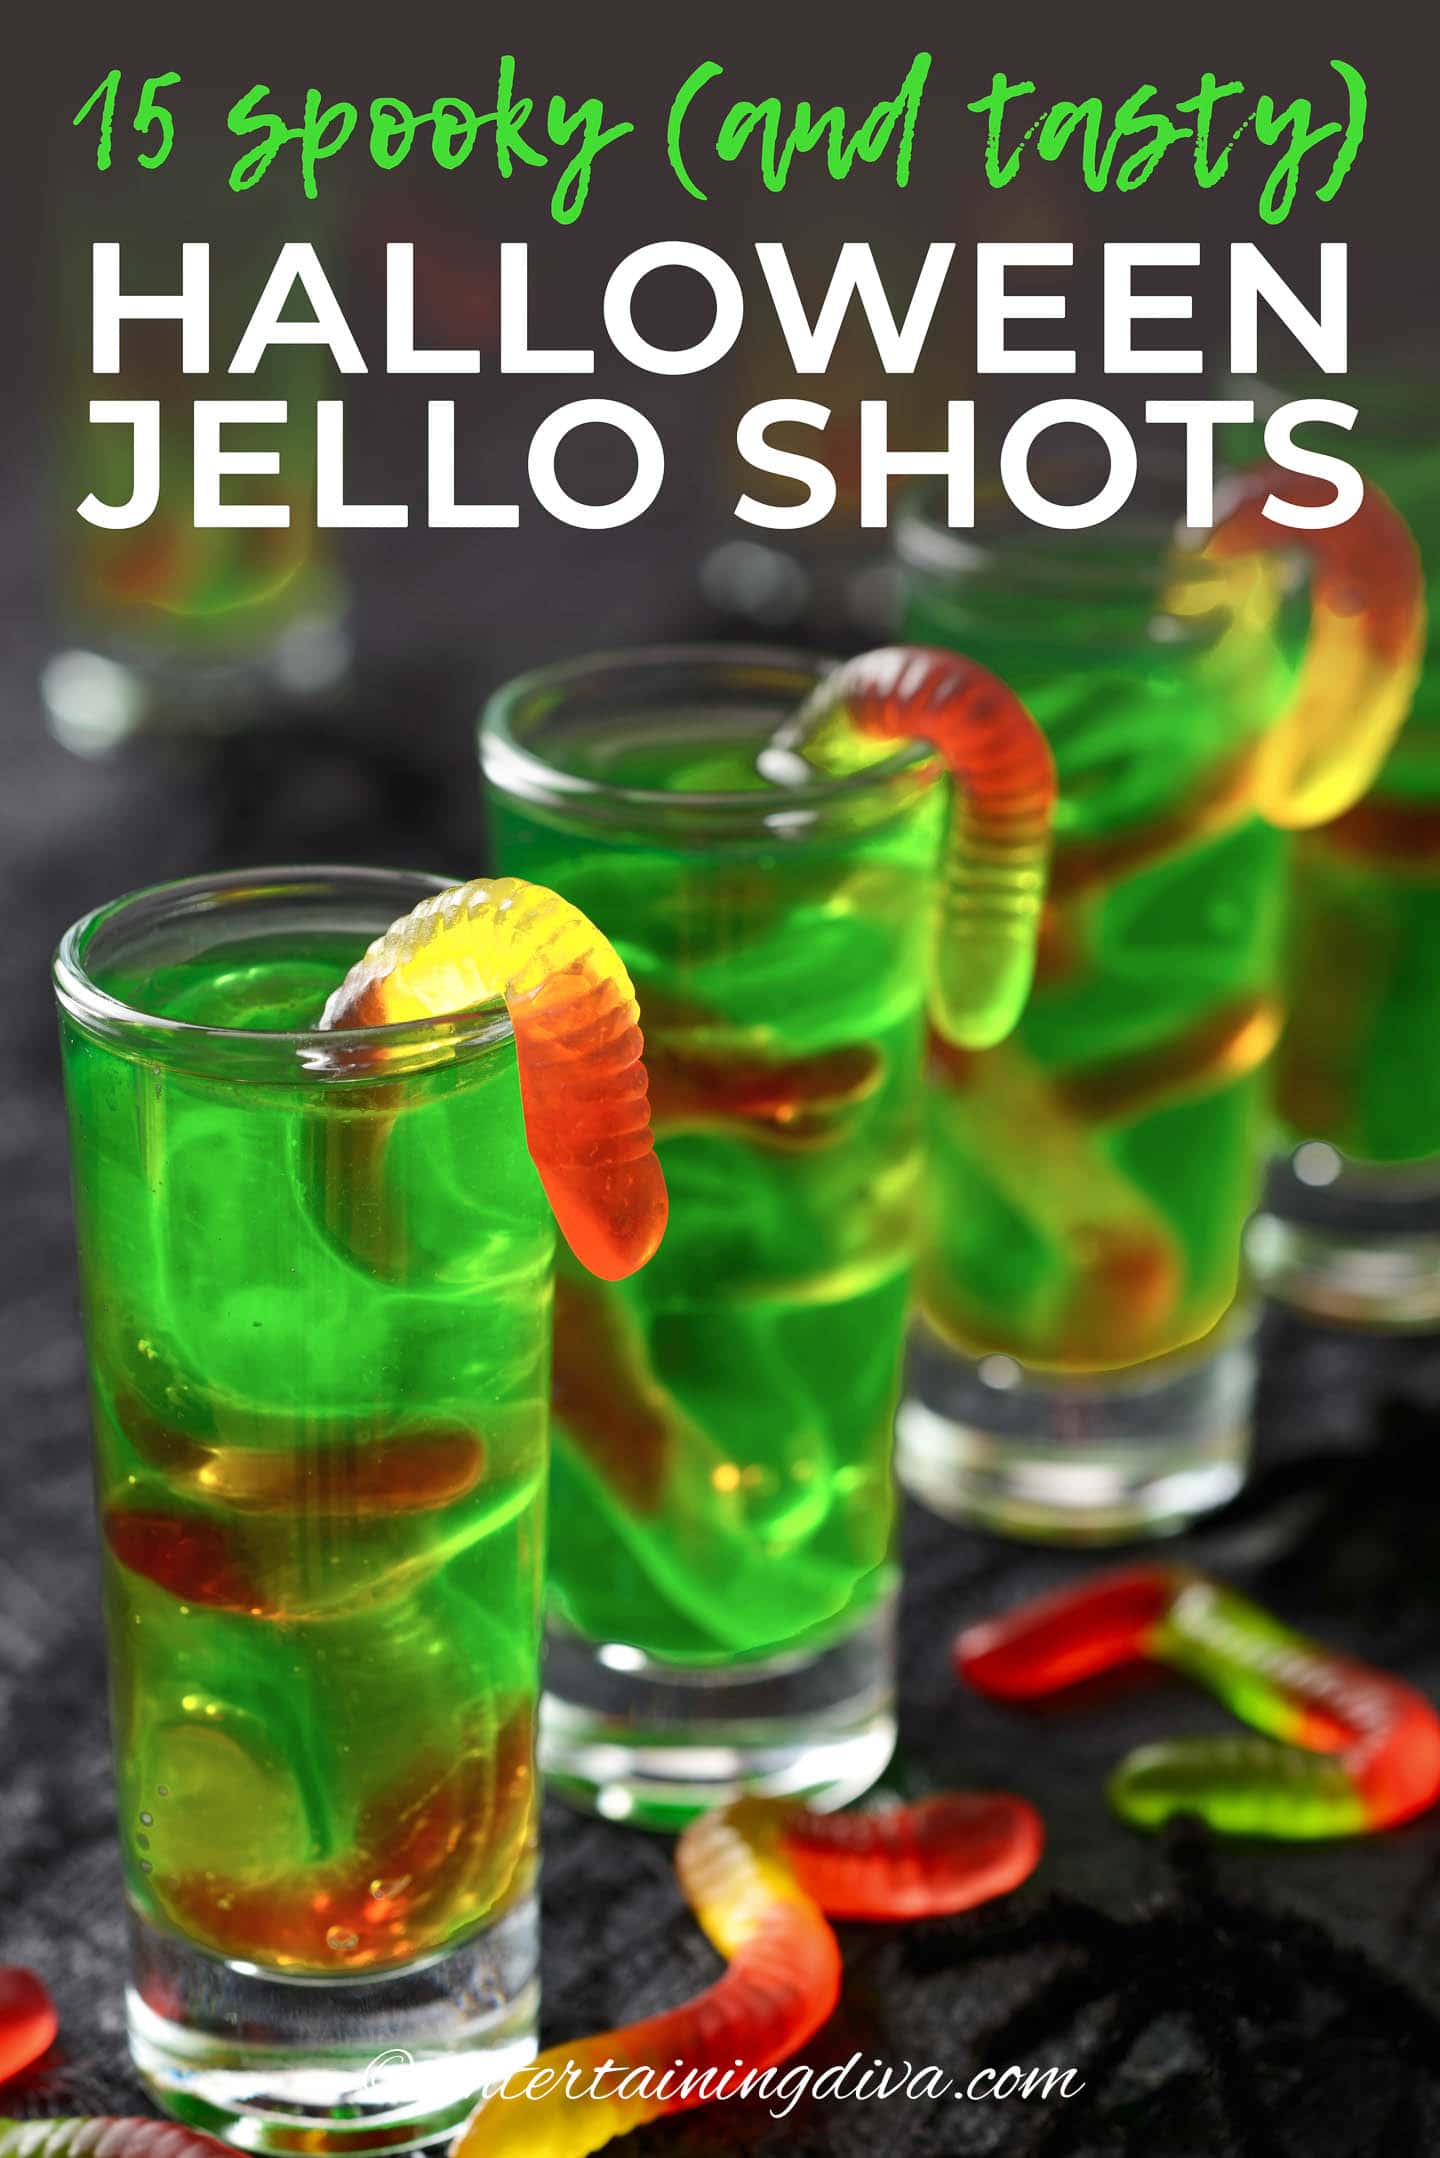 13 spooky and tasty Halloween Jello shots